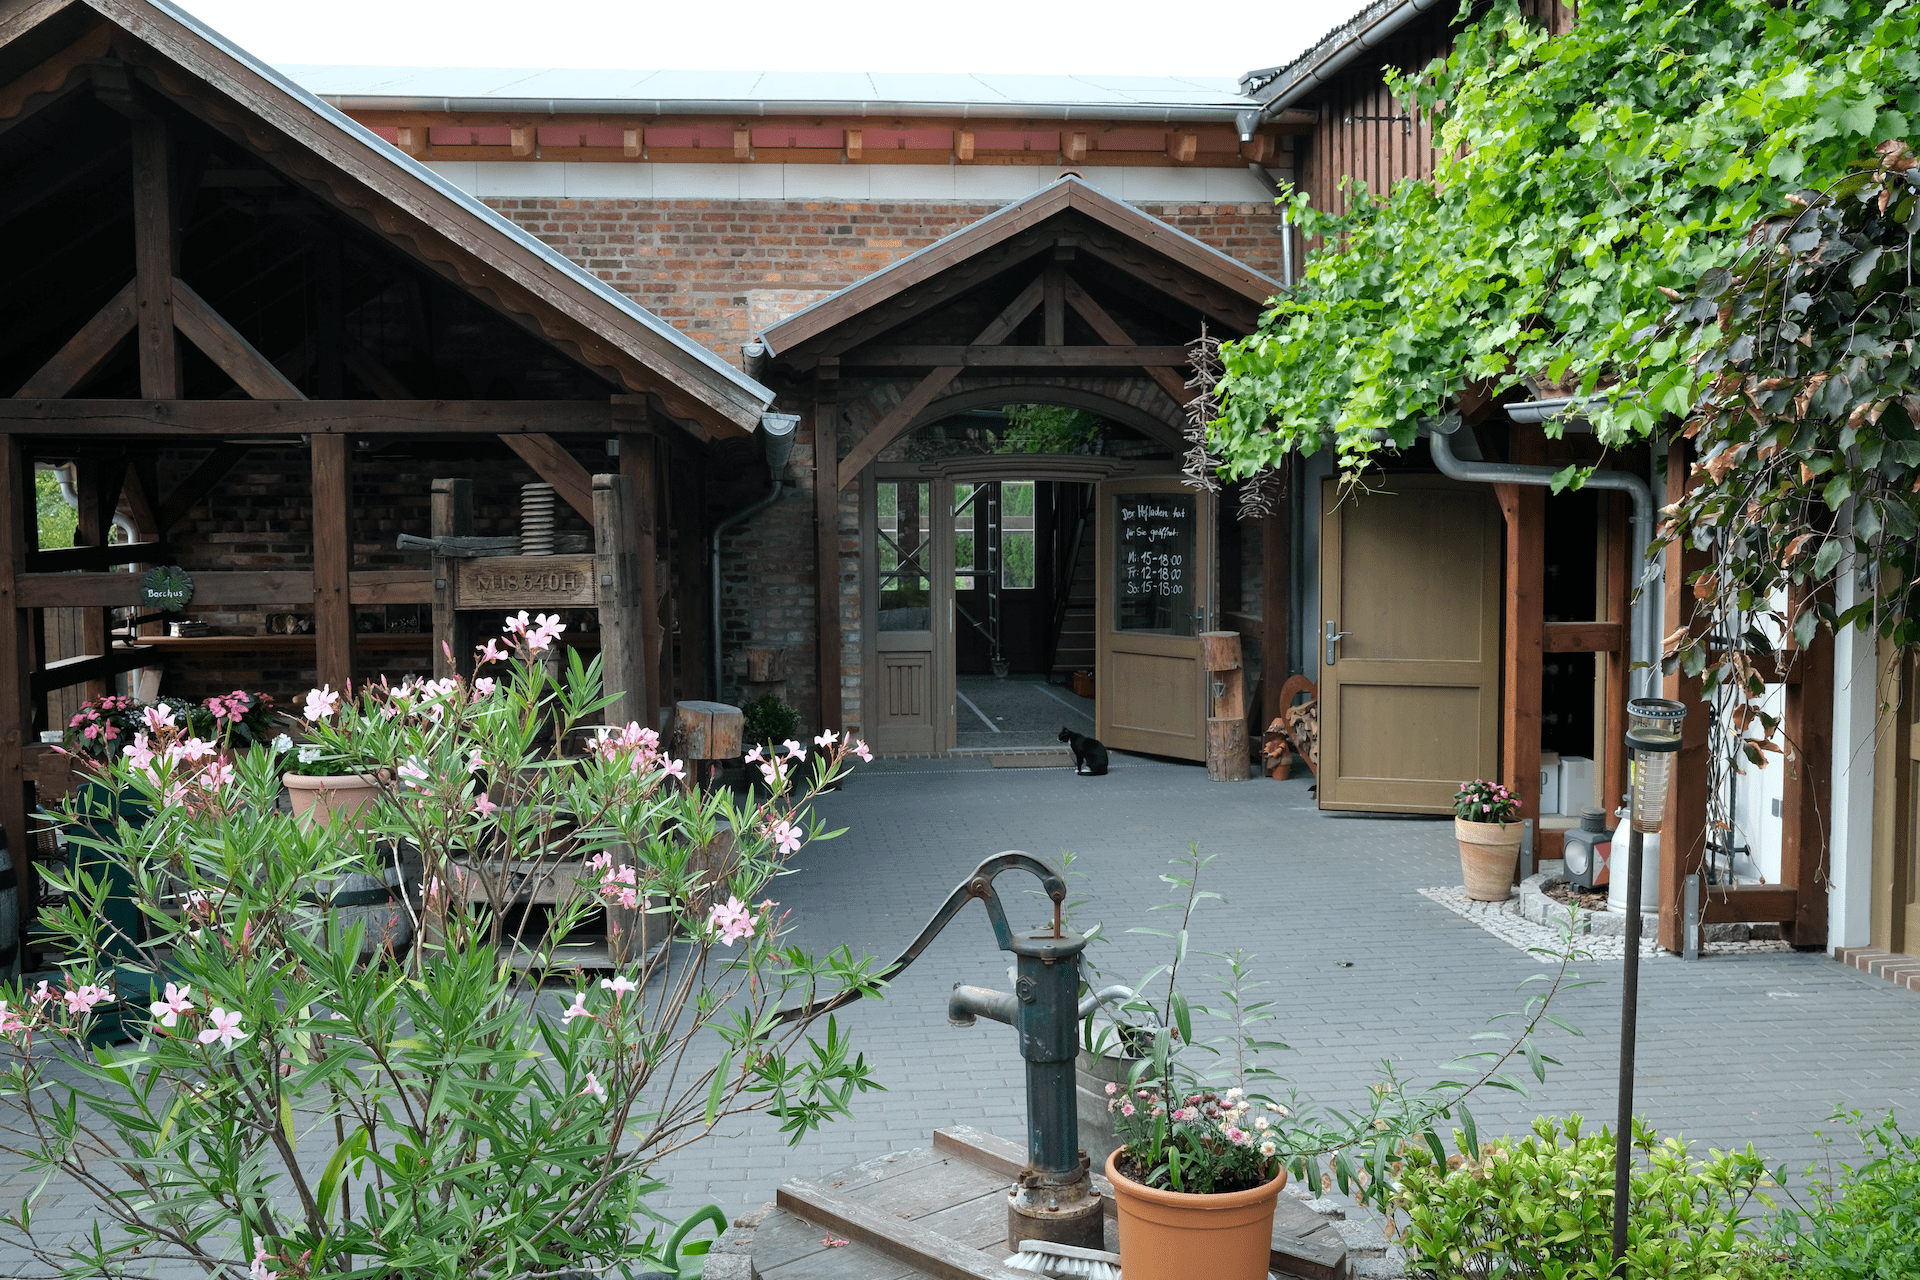 Eingang zum Hofladen des Weingut Patke